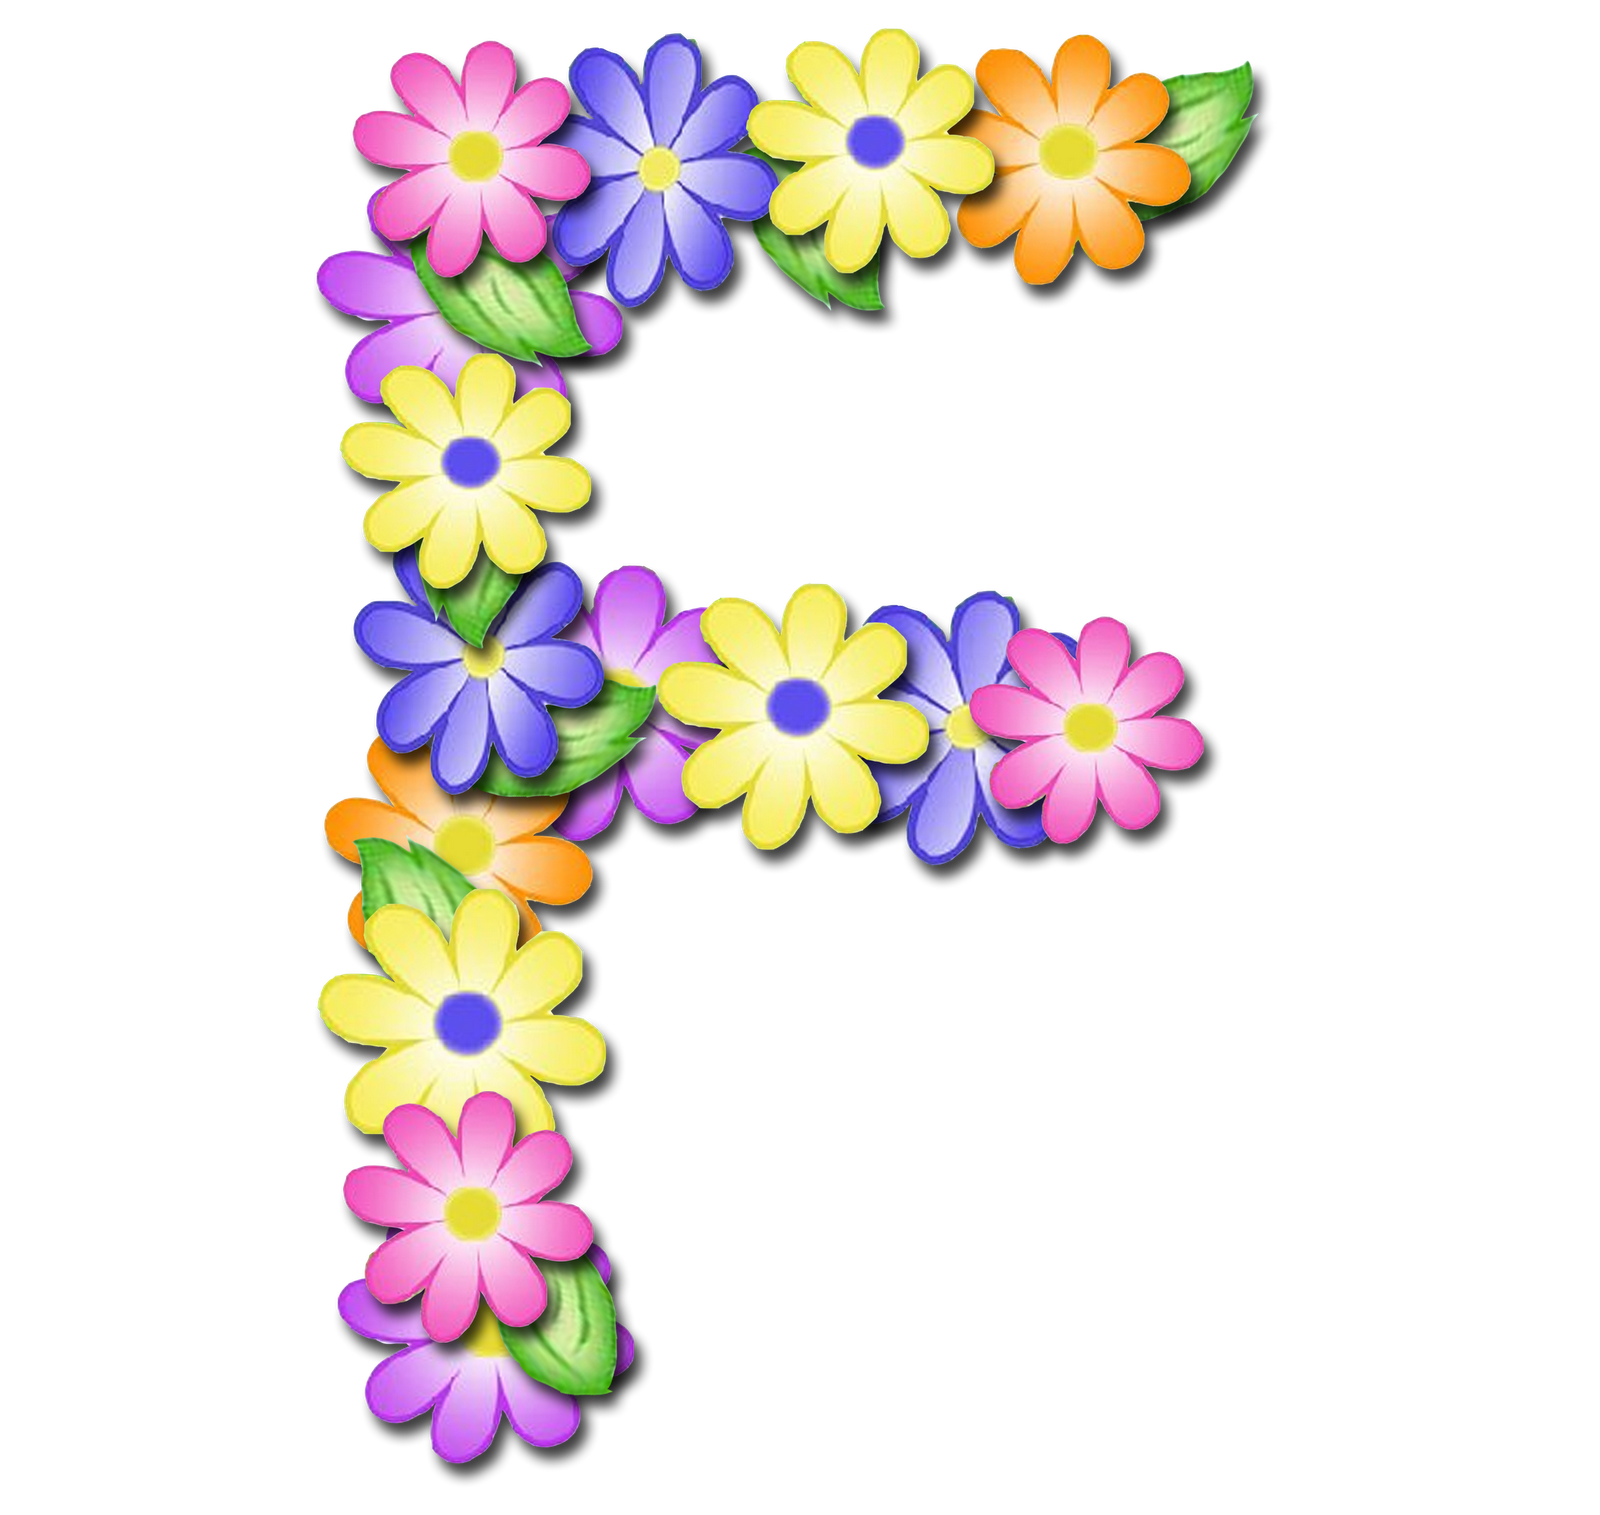 صور الحروف الإنجليزية بأجمل الزهور والورود بخلفية شفافة بنج png وجودة عالية للمصممين :: إبحث عن حروف إسمك بالإنجليزية P_1699xeim16